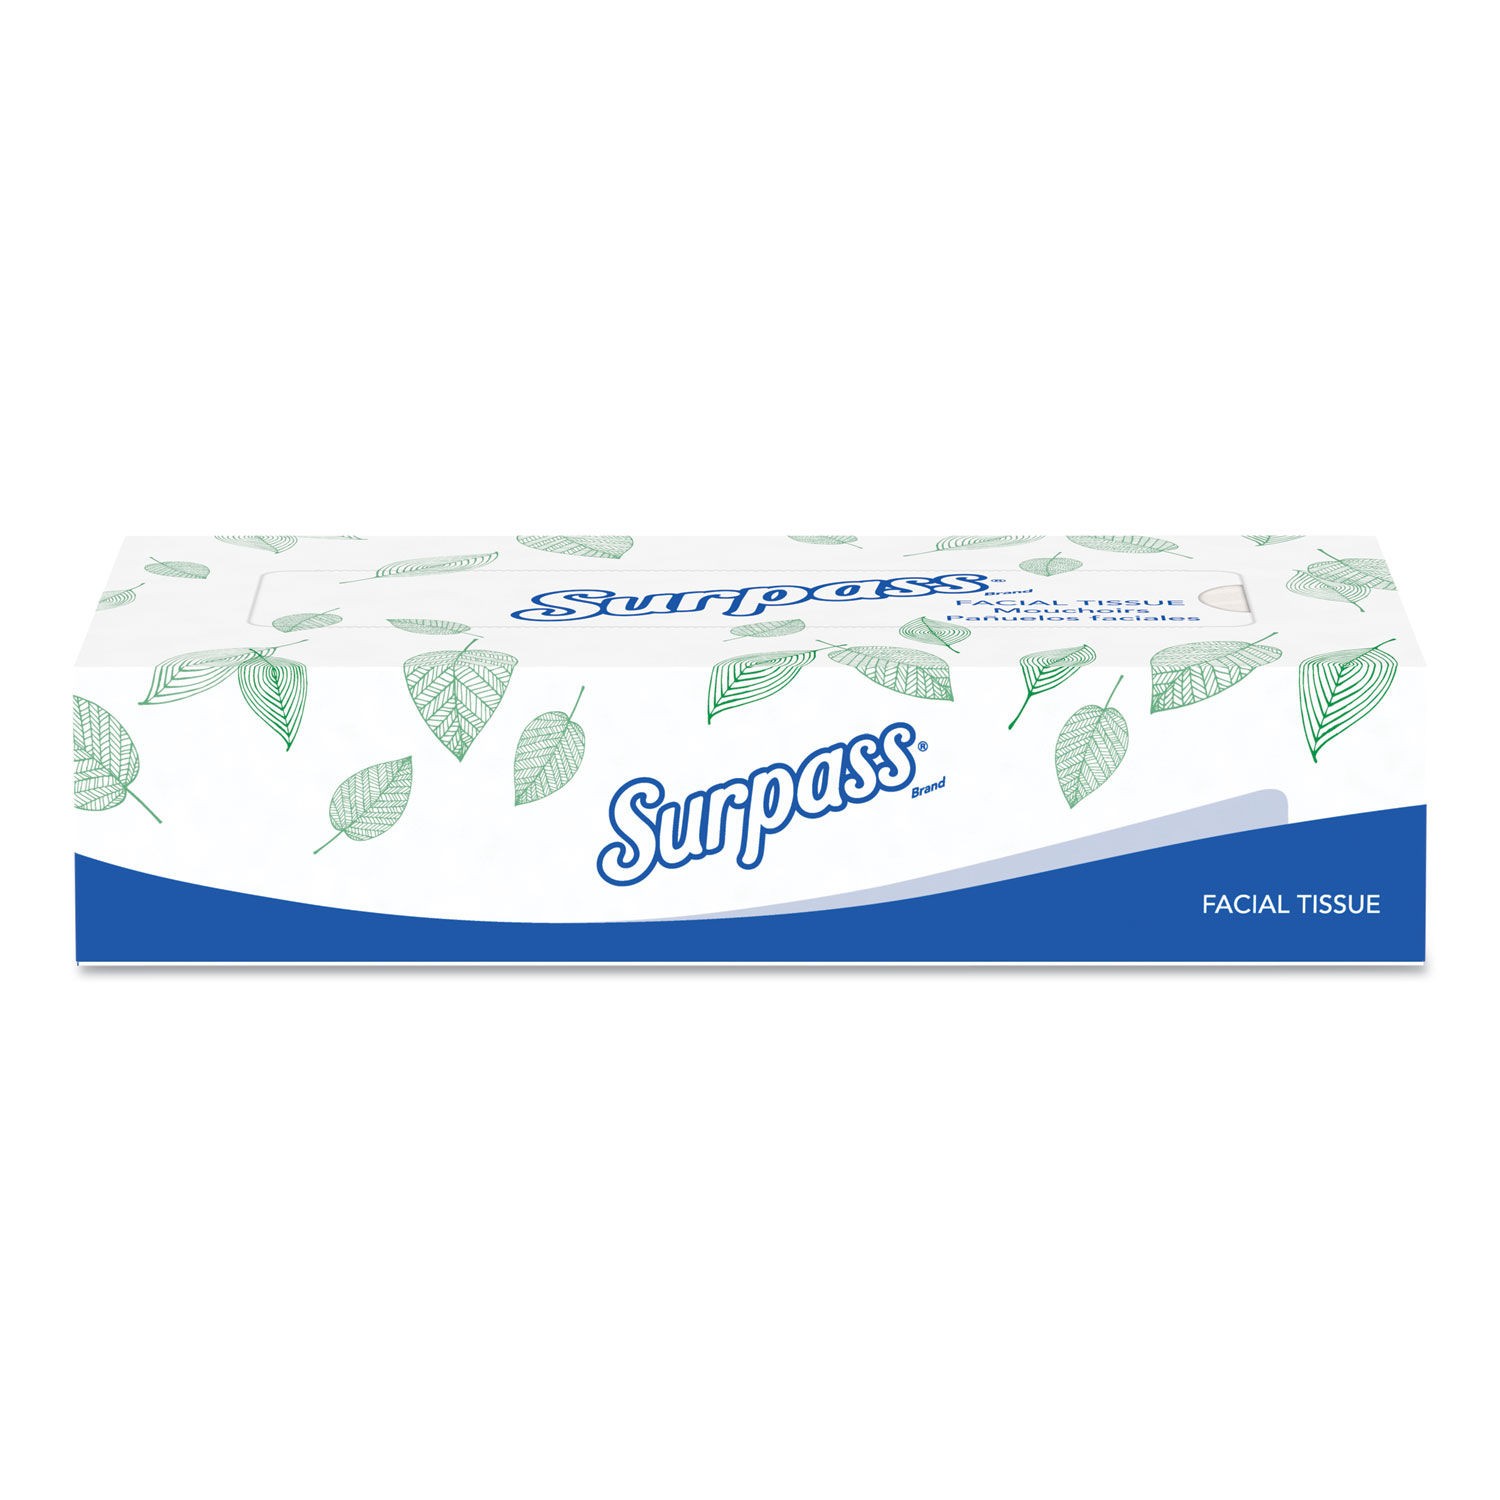 Surpass Facial Tissue, 2-Ply, Flat Box, 30 Boxes/Carton